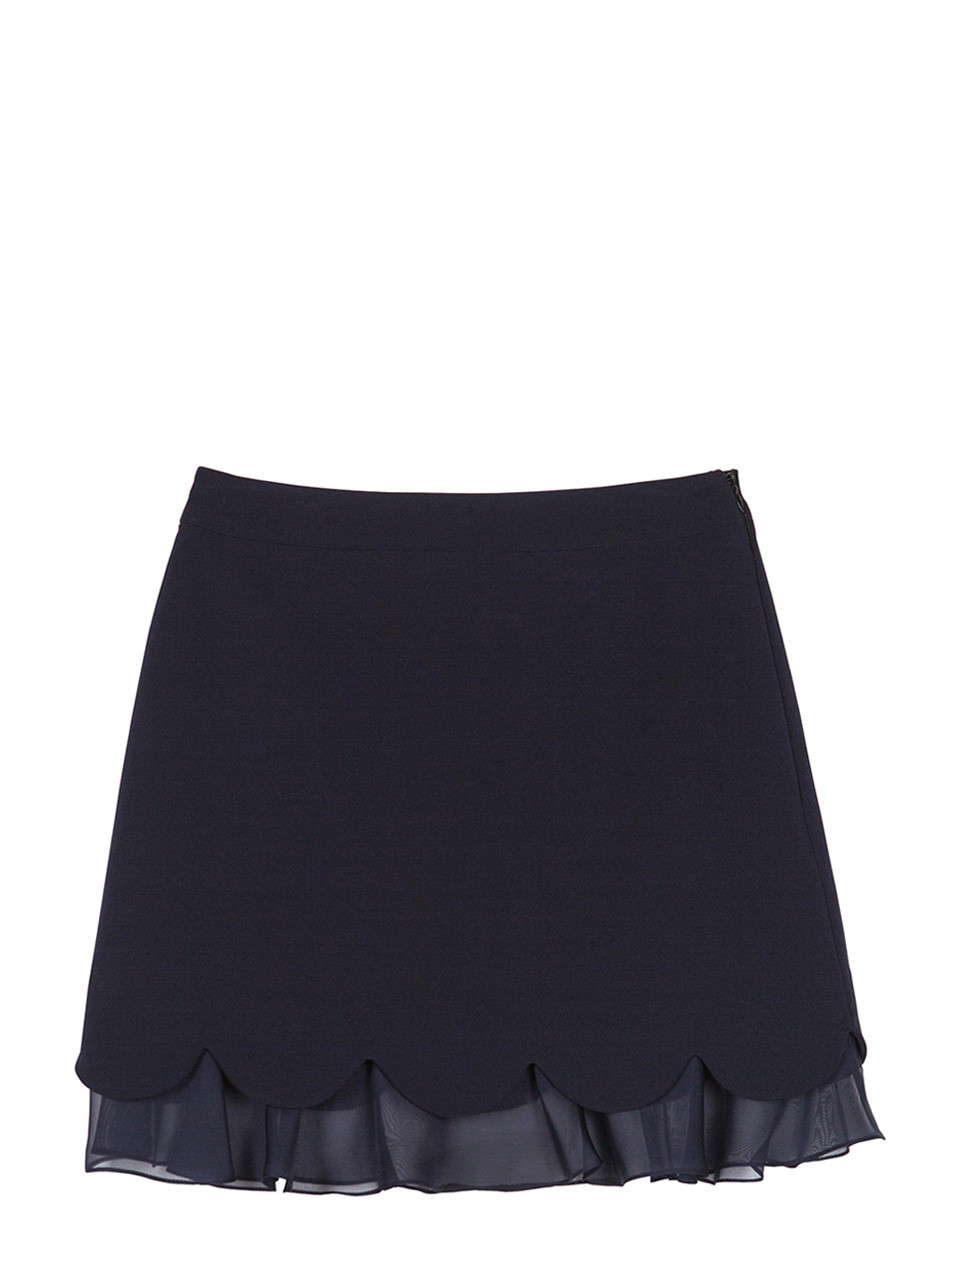 Petal Layered Skirt - navy